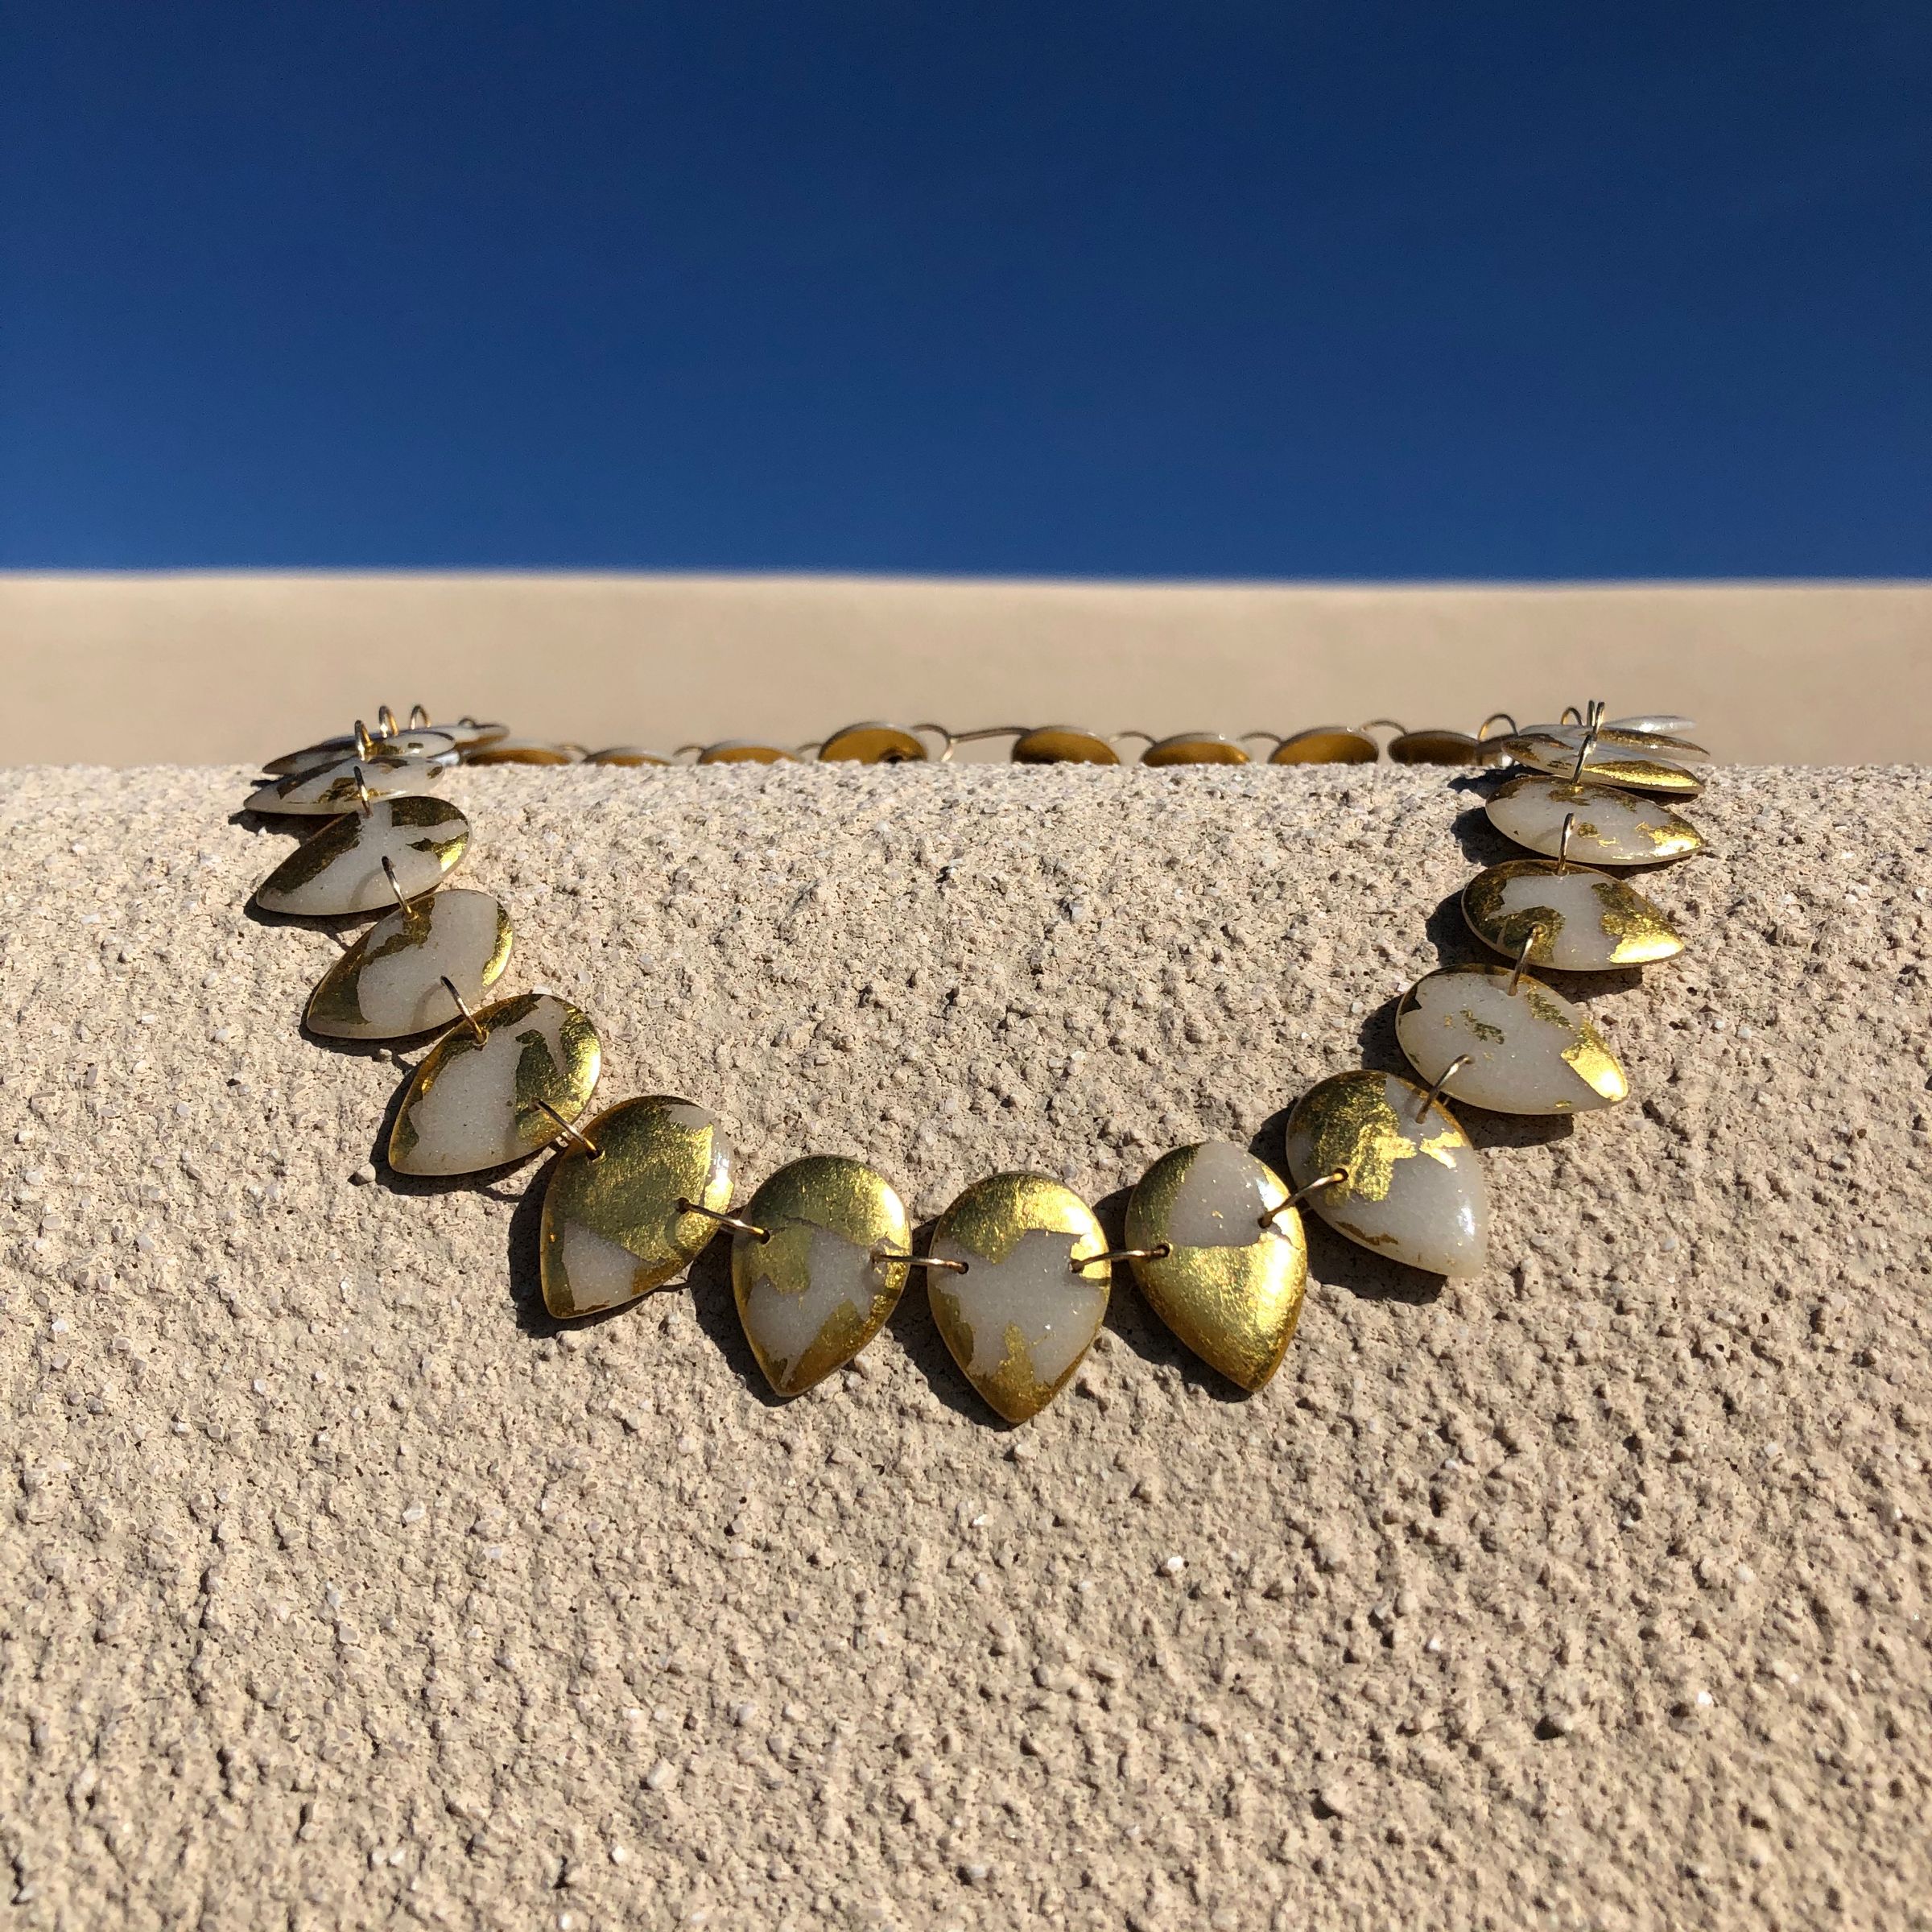 Product Image for Droplet Necklace, 22k Gold Leaf (Reversible)